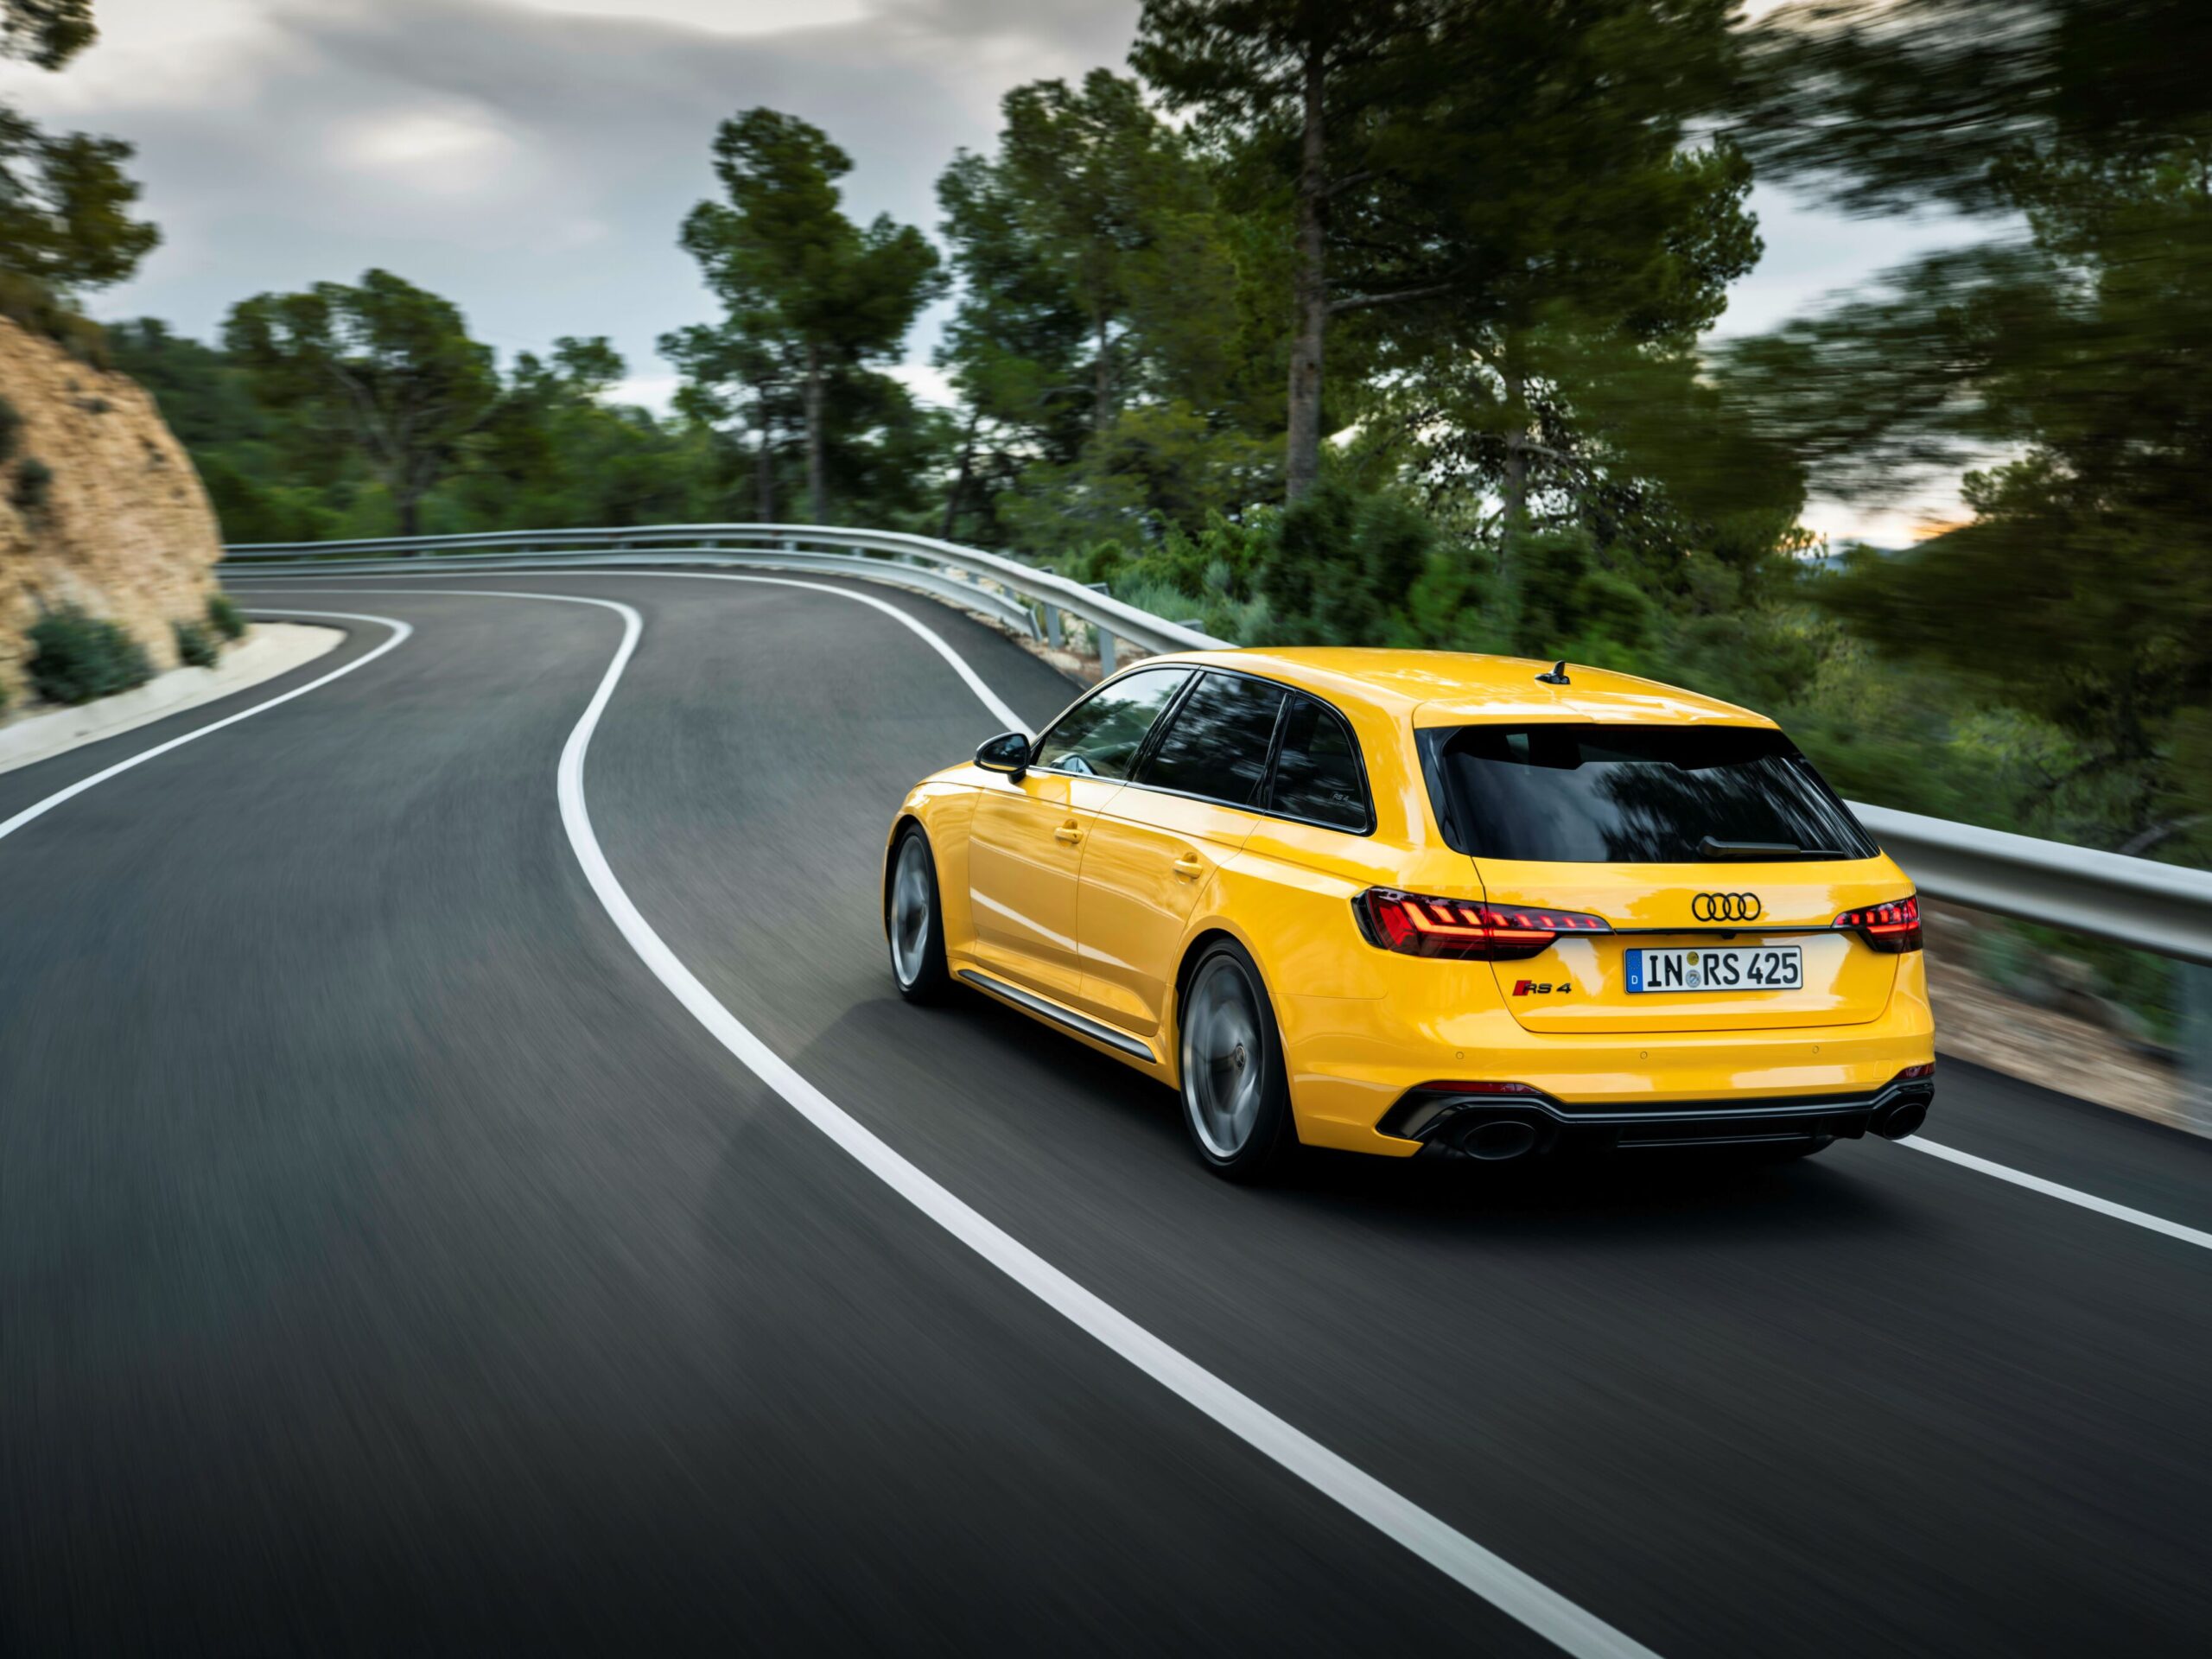 Conheça o novo Audi RS 4 Avant edition 25: elevada performance no dia-a-dia e em pista deste modelo exclusivo